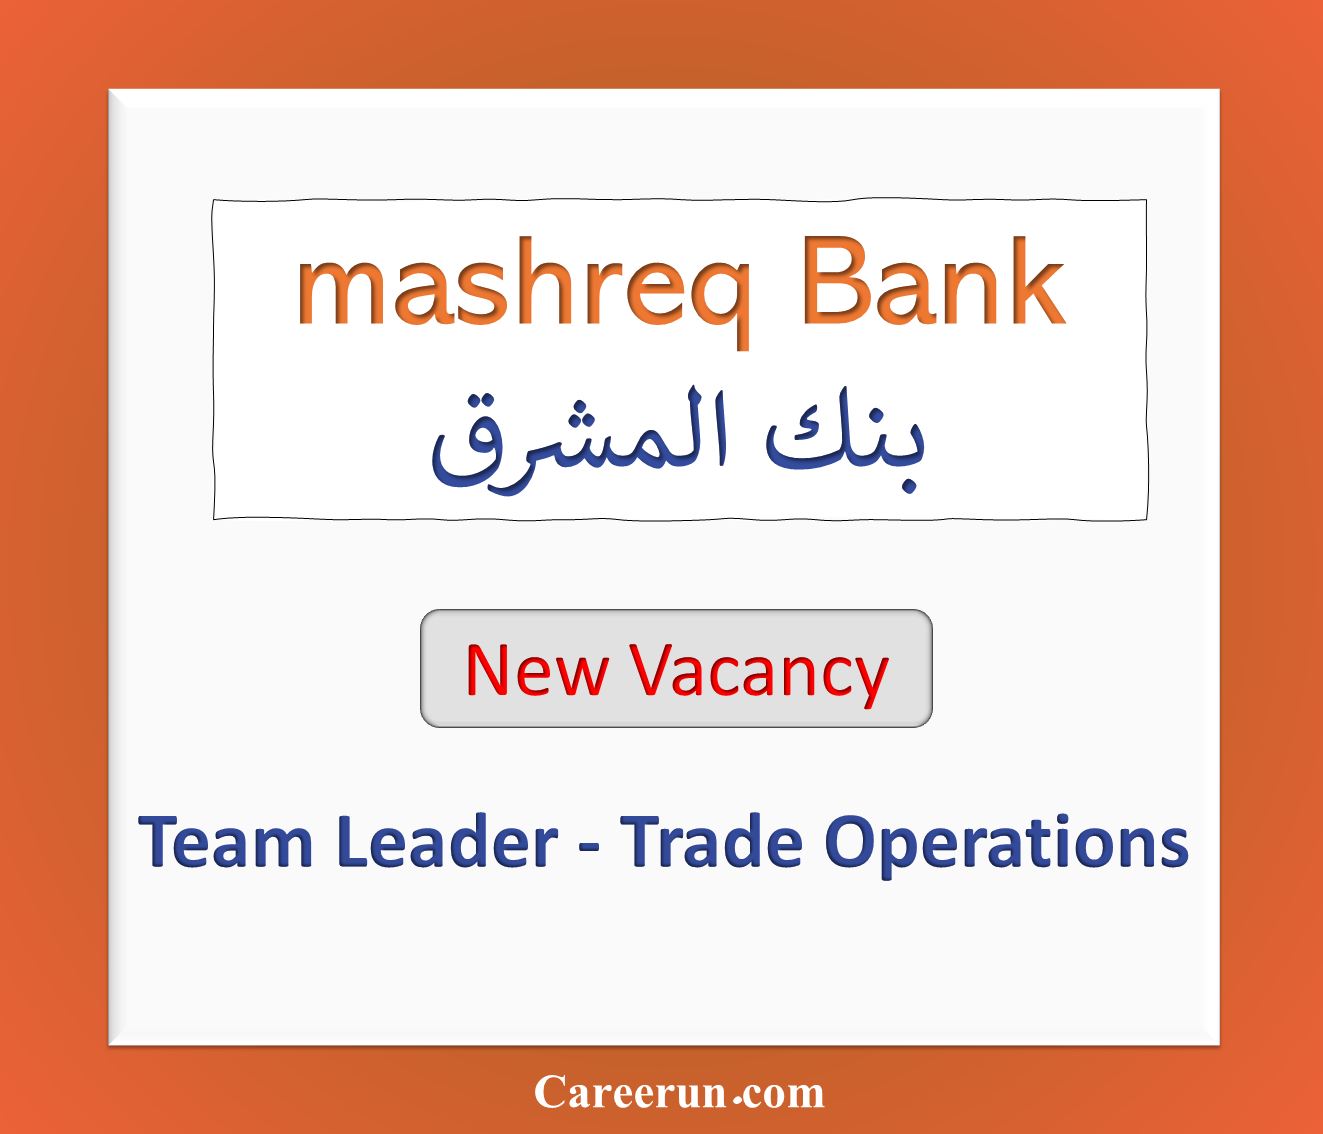 Team Leader – Trade Operations at Mashreq Bank